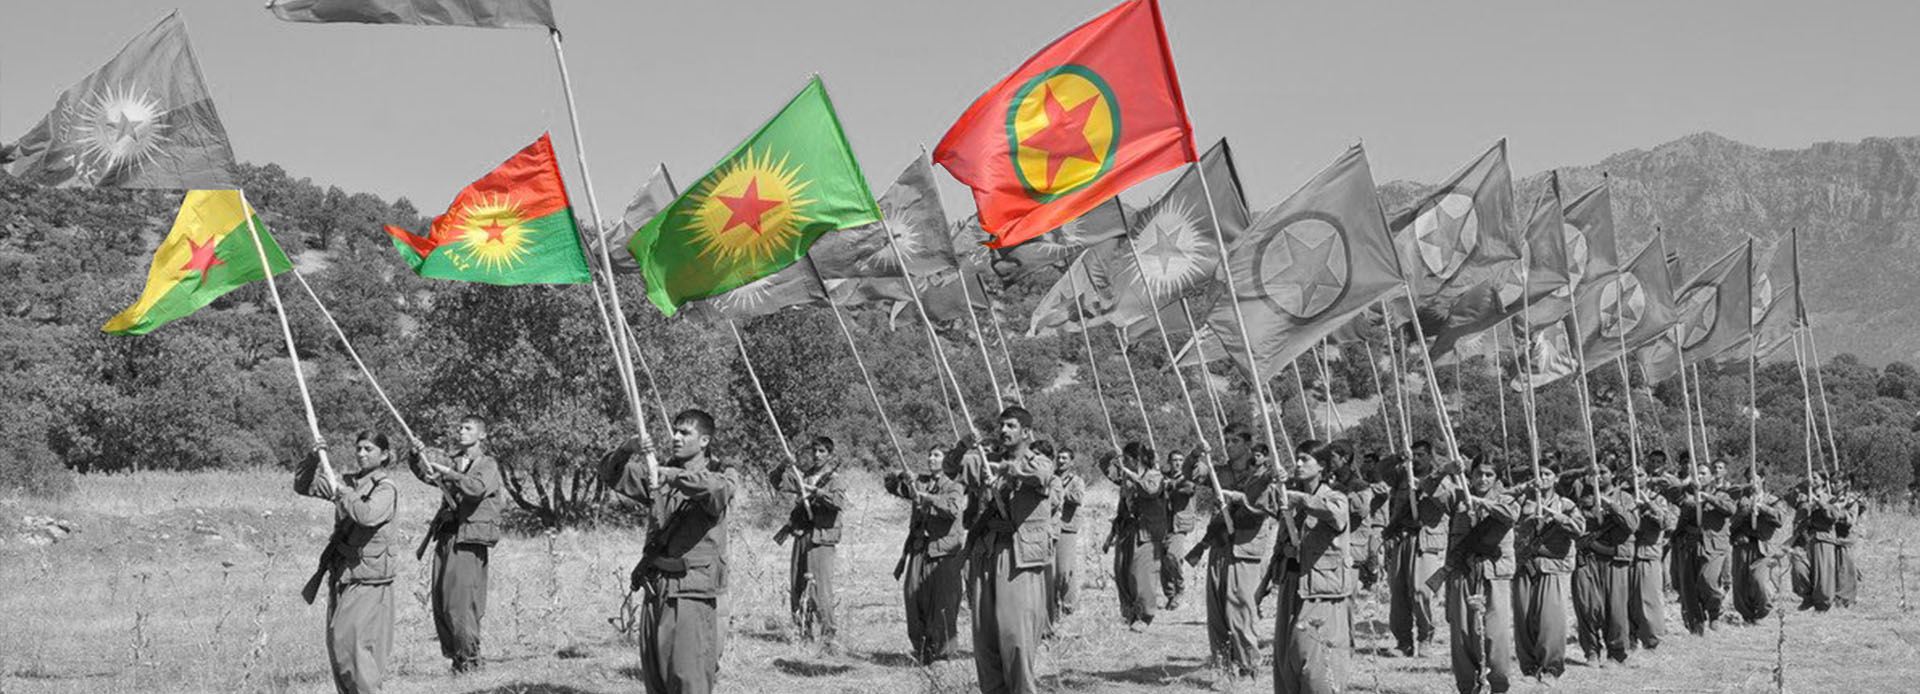 BIJI PKK